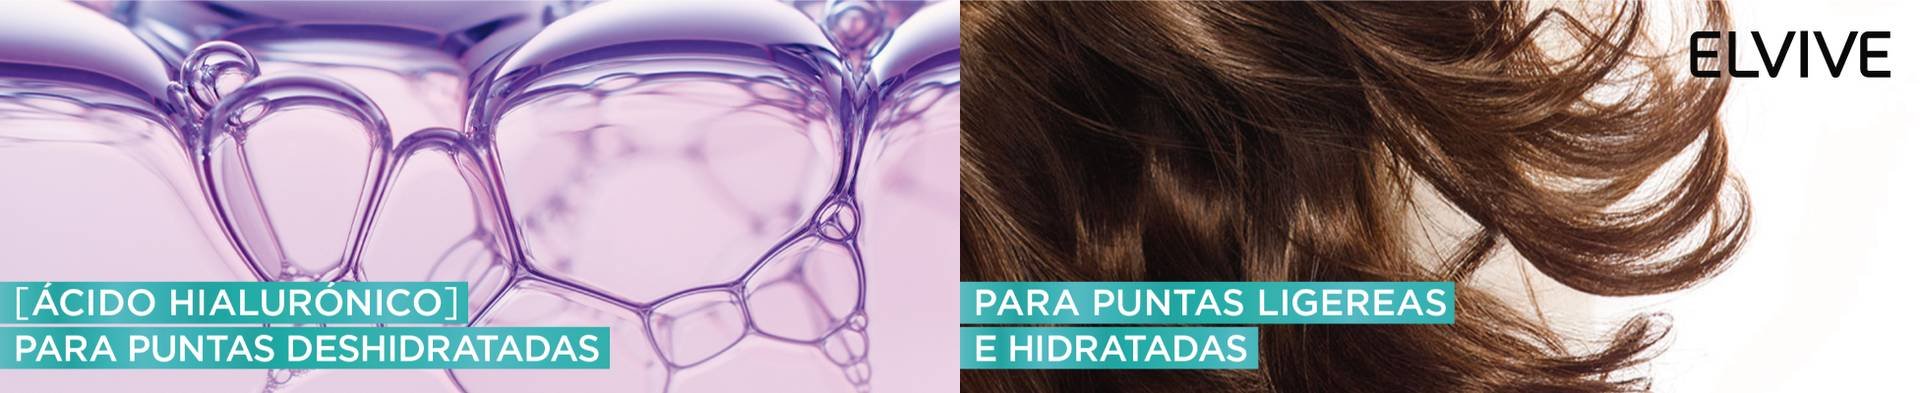 La nueva línea de Elvive con ácido hialurónico lleva el uso de este  ingrediente al pelo y es una ideaza